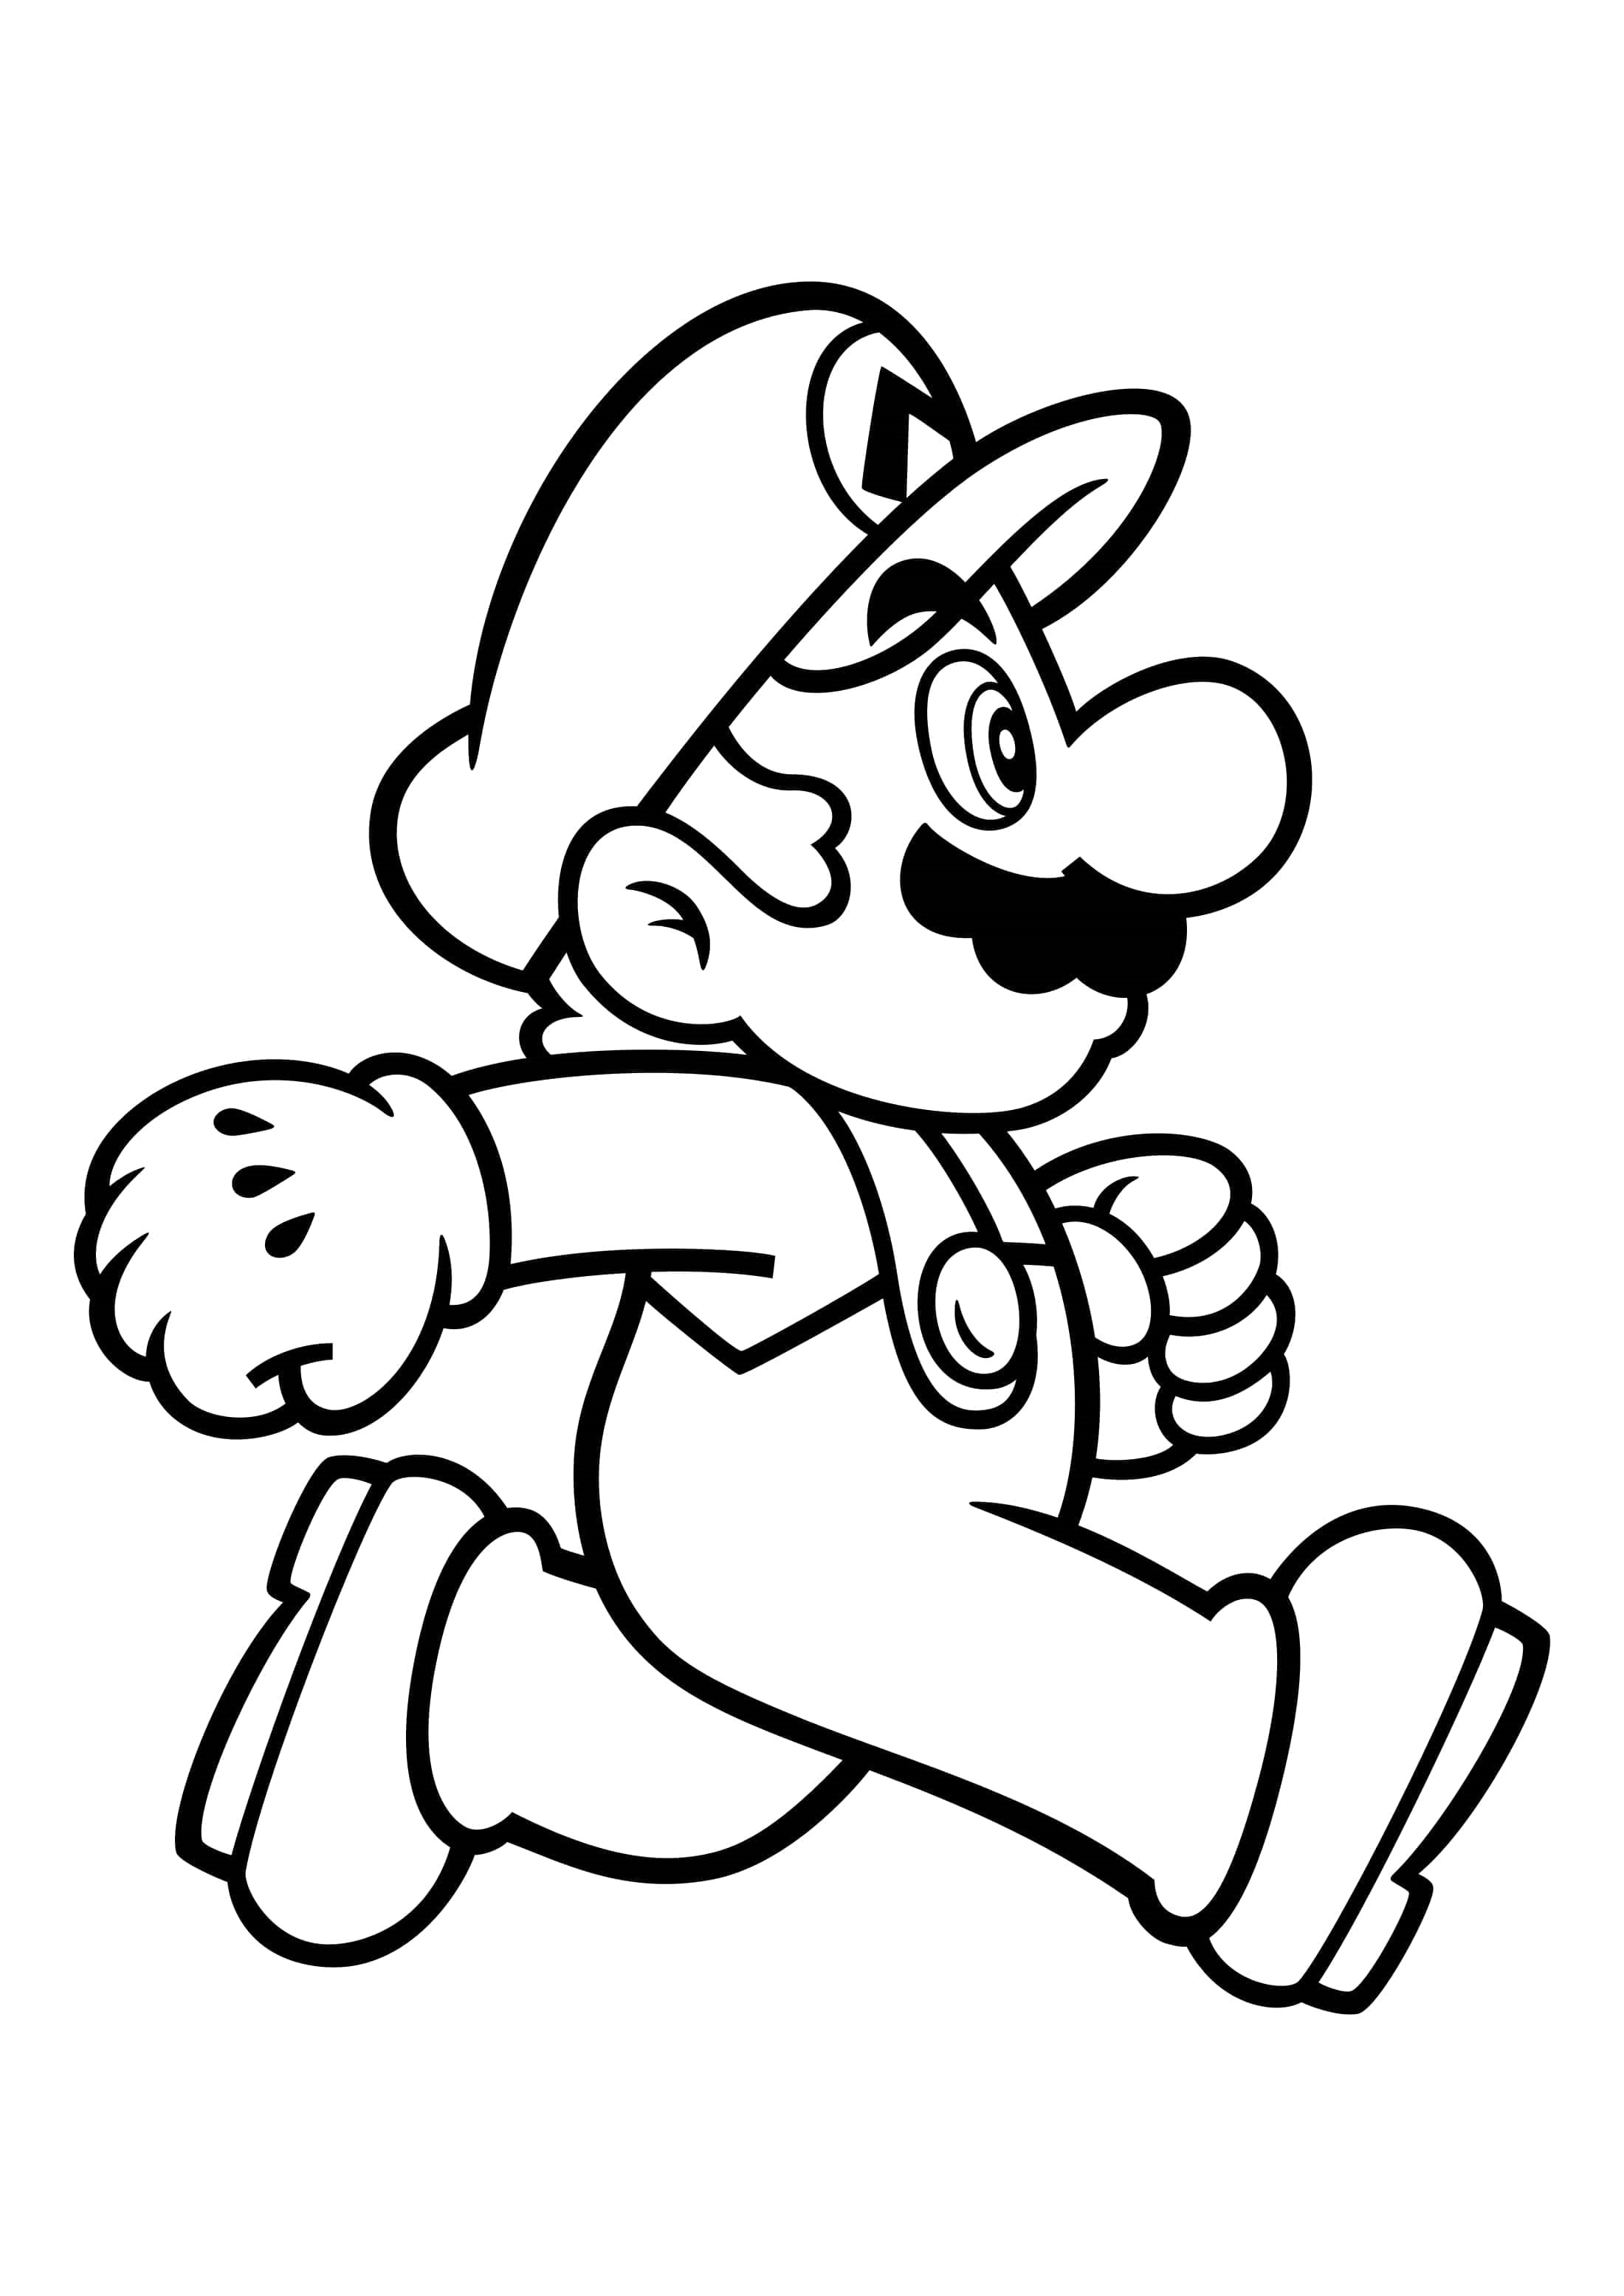 Dibujo 45 de Super Mario para imprimir y colorear